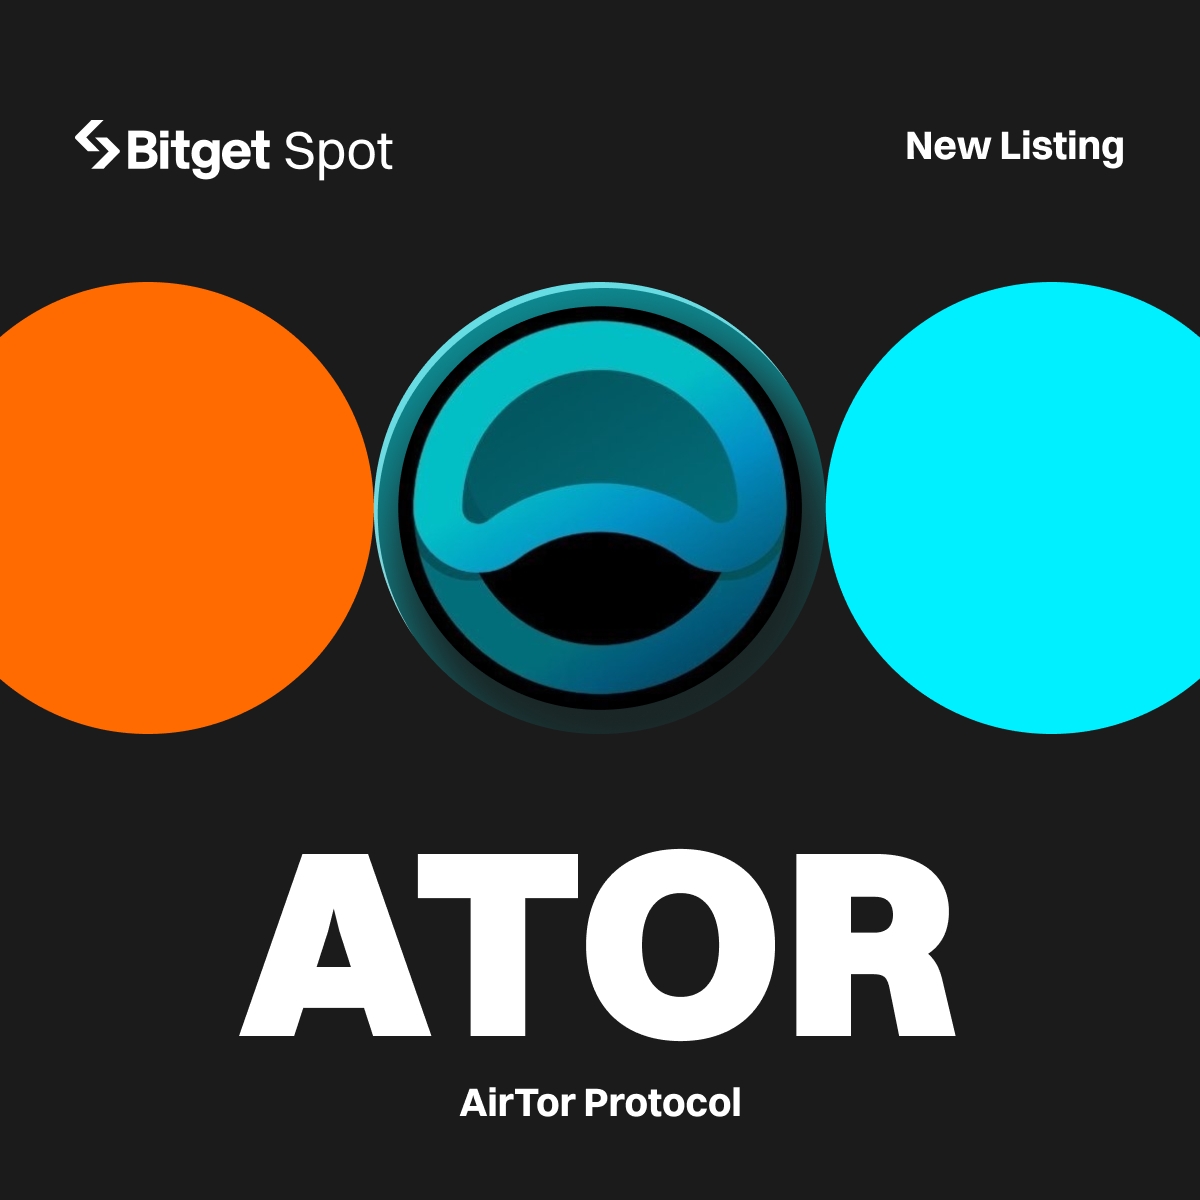 🤩 $ATOR od @atorprotocol już na #BitgetSpot!
 
#Bitget wystawi ATOR/USDT z kwotą 3,500 $ATOR do zgarnięcia!

🔹Depozyt: Już otwarty!
🔹Rozpoczęcie handlu: Dziś o 13:00!

Więcej szczegółów: bitget.com/pl/support/art…

#ATORlistBitget